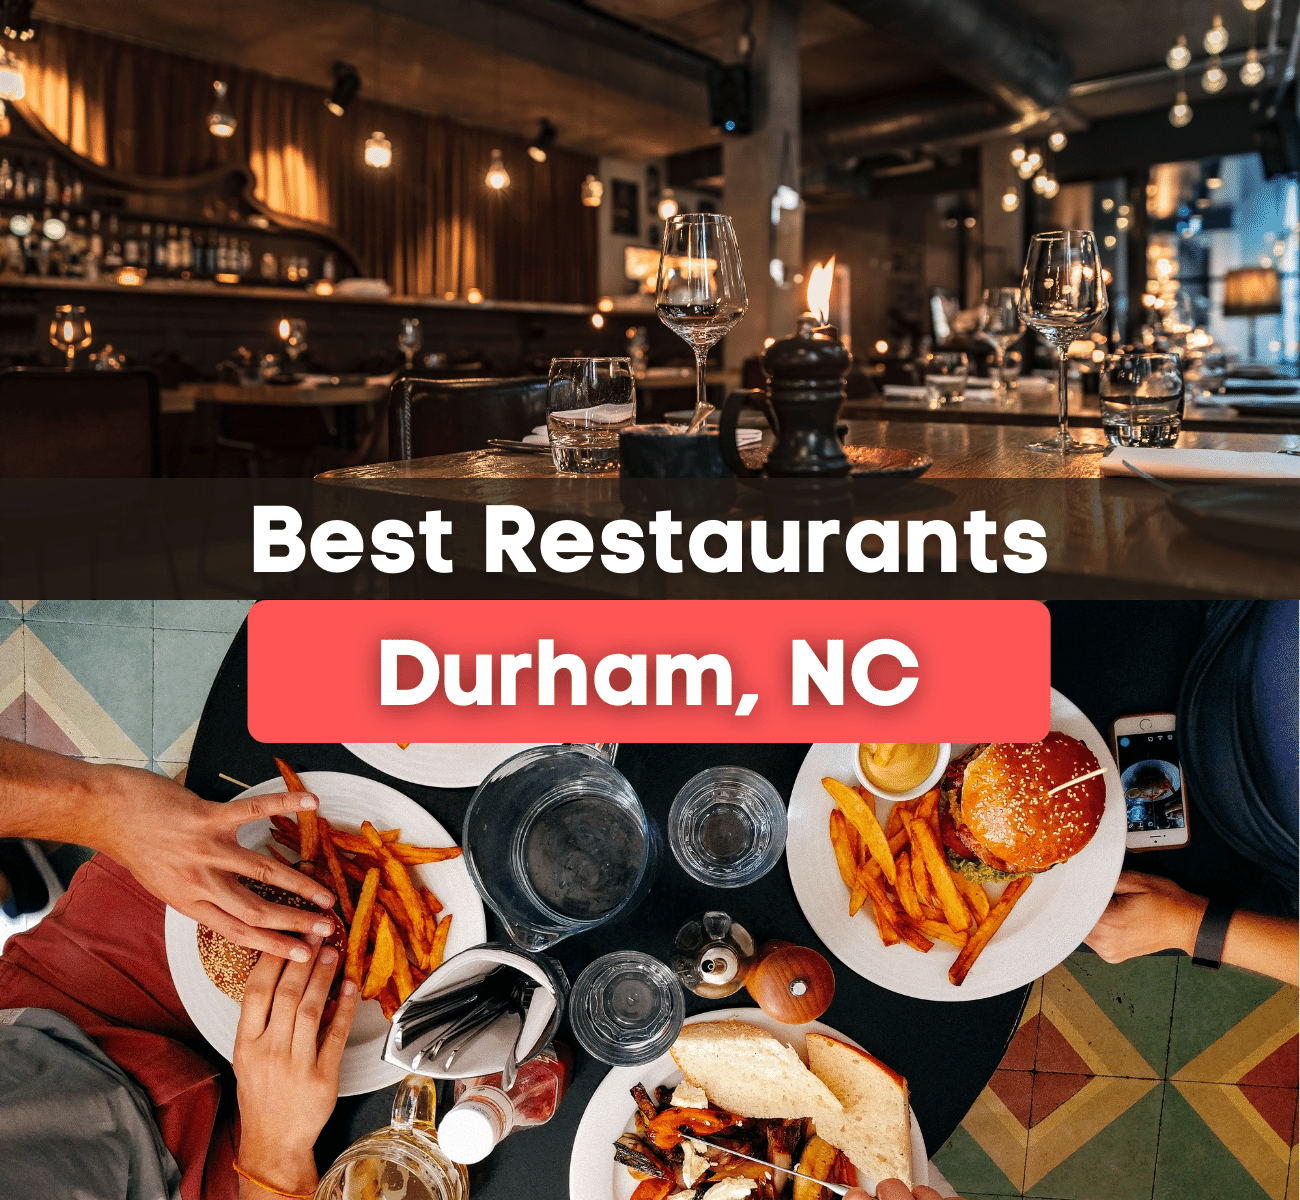 Best Restaurants in Durham, NC graphic 